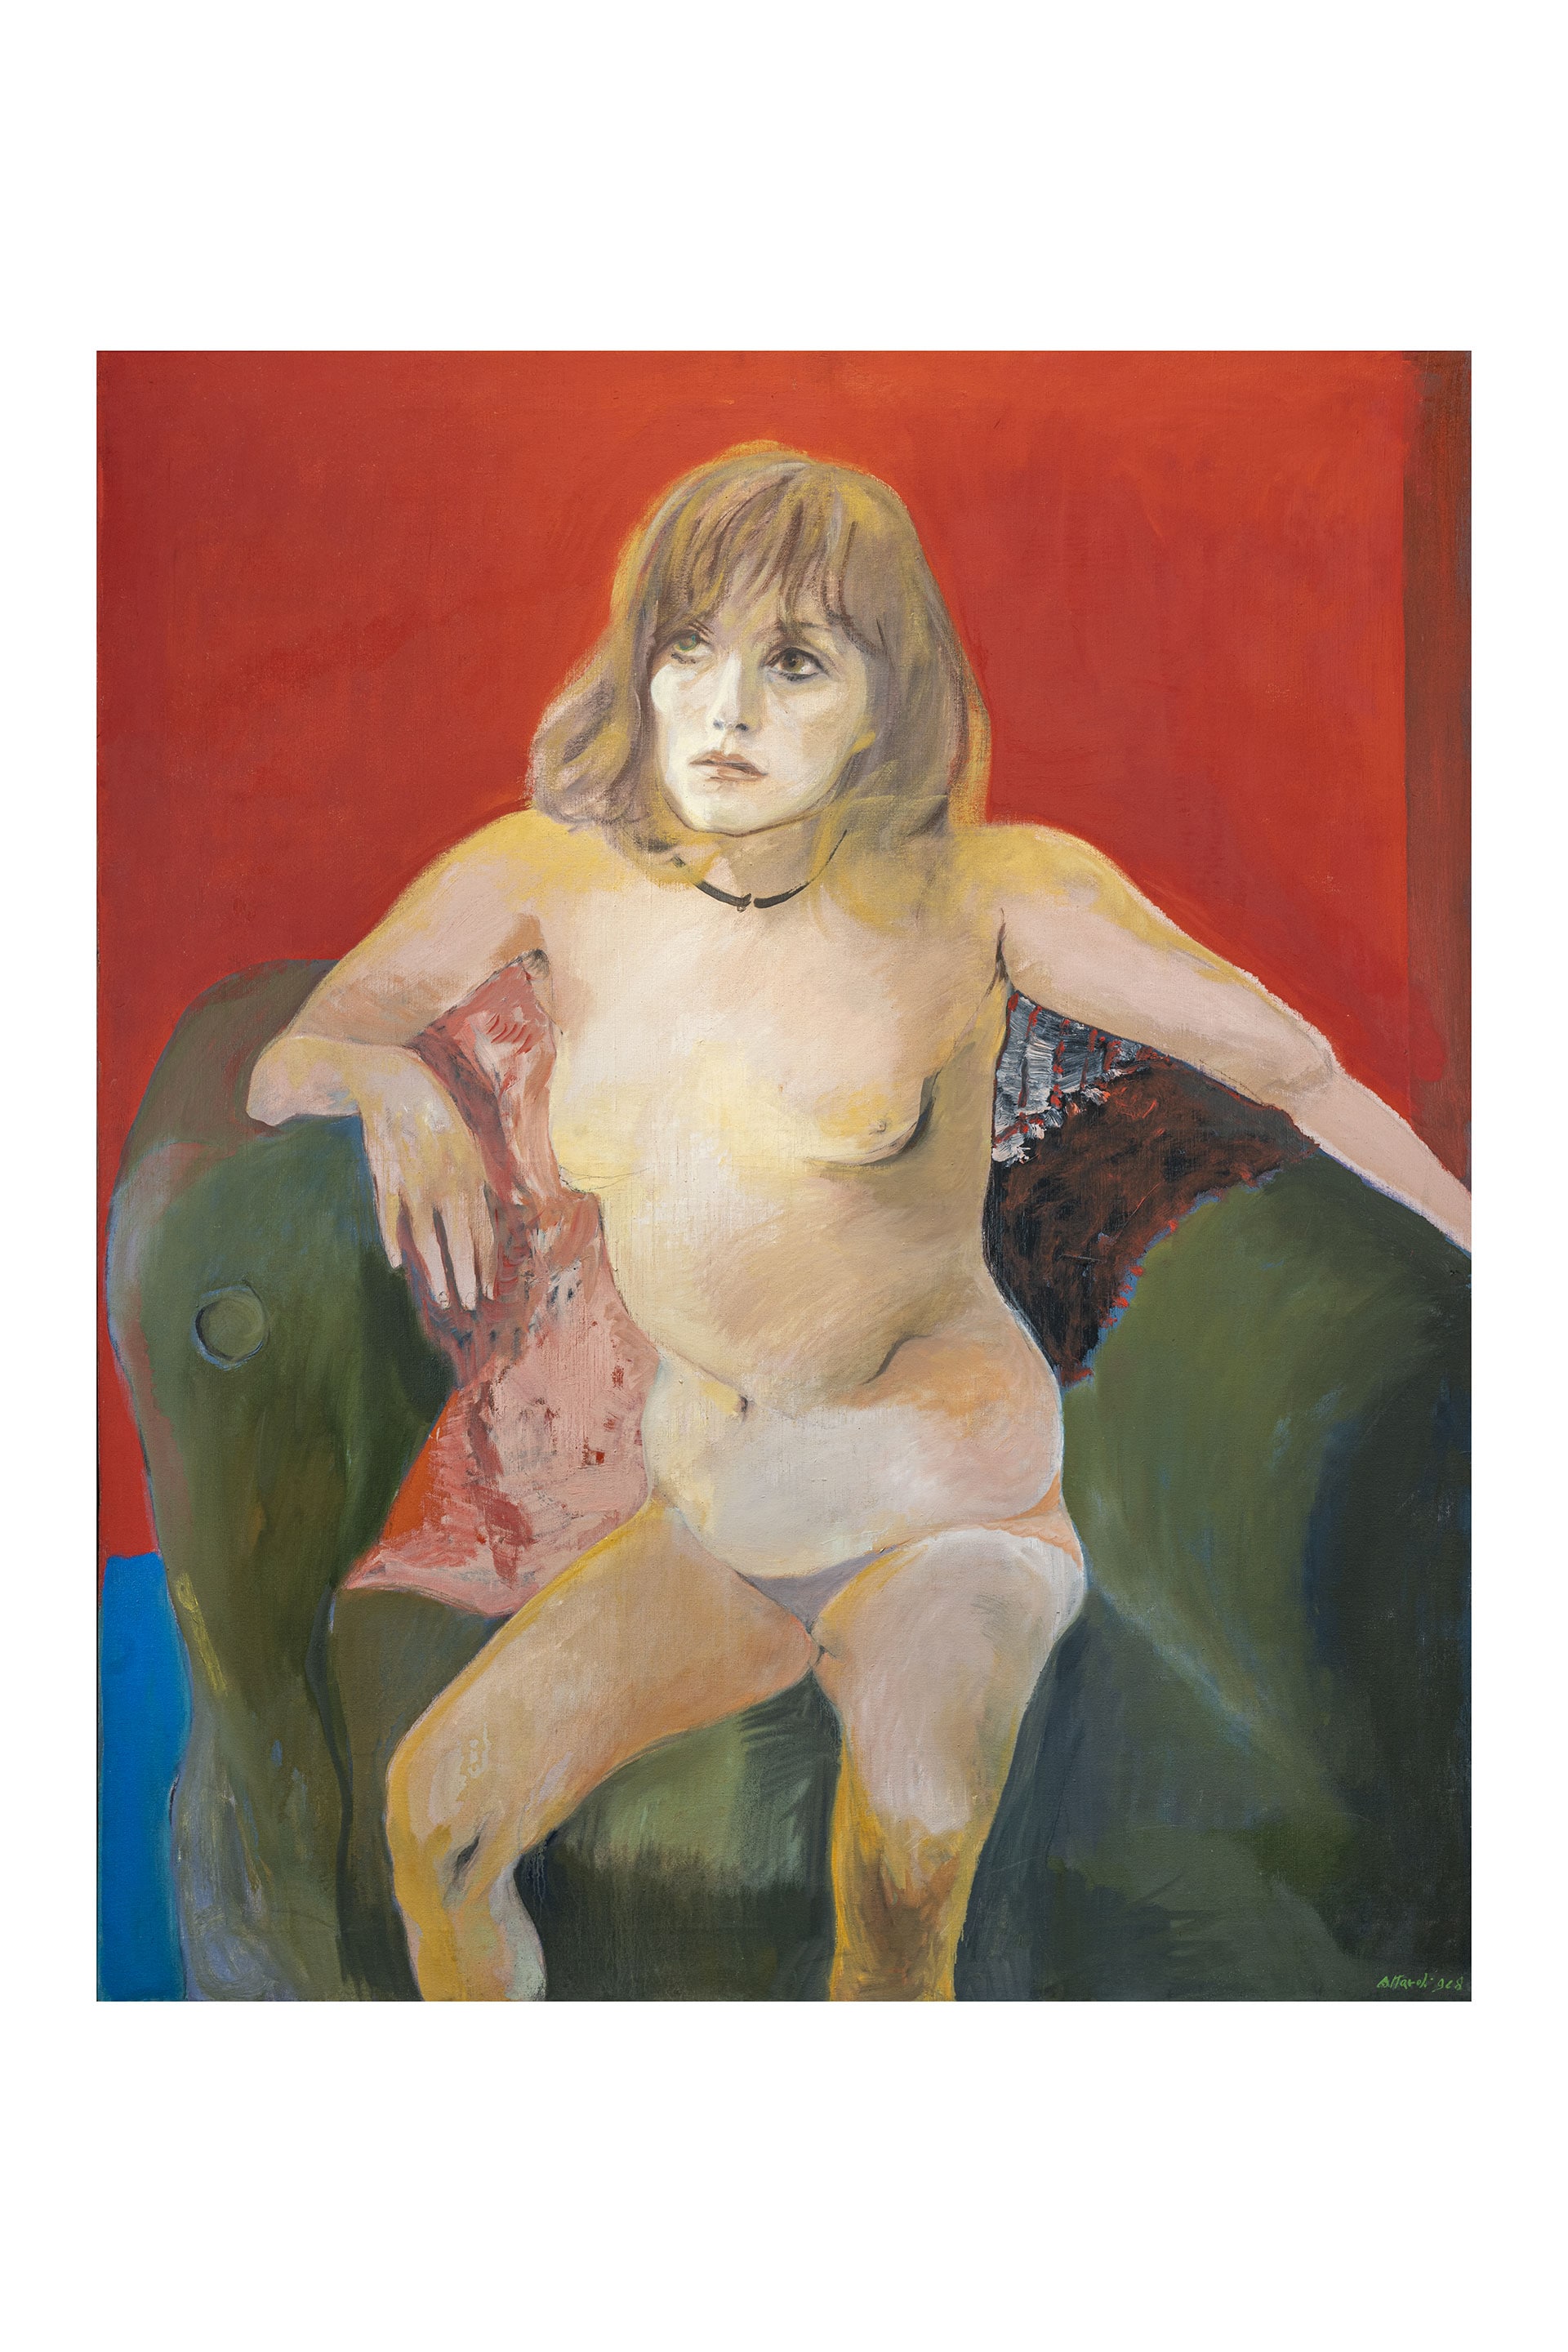 Ugo Attardi "Isabel", 1968. Olio su tela, cm 115x95 